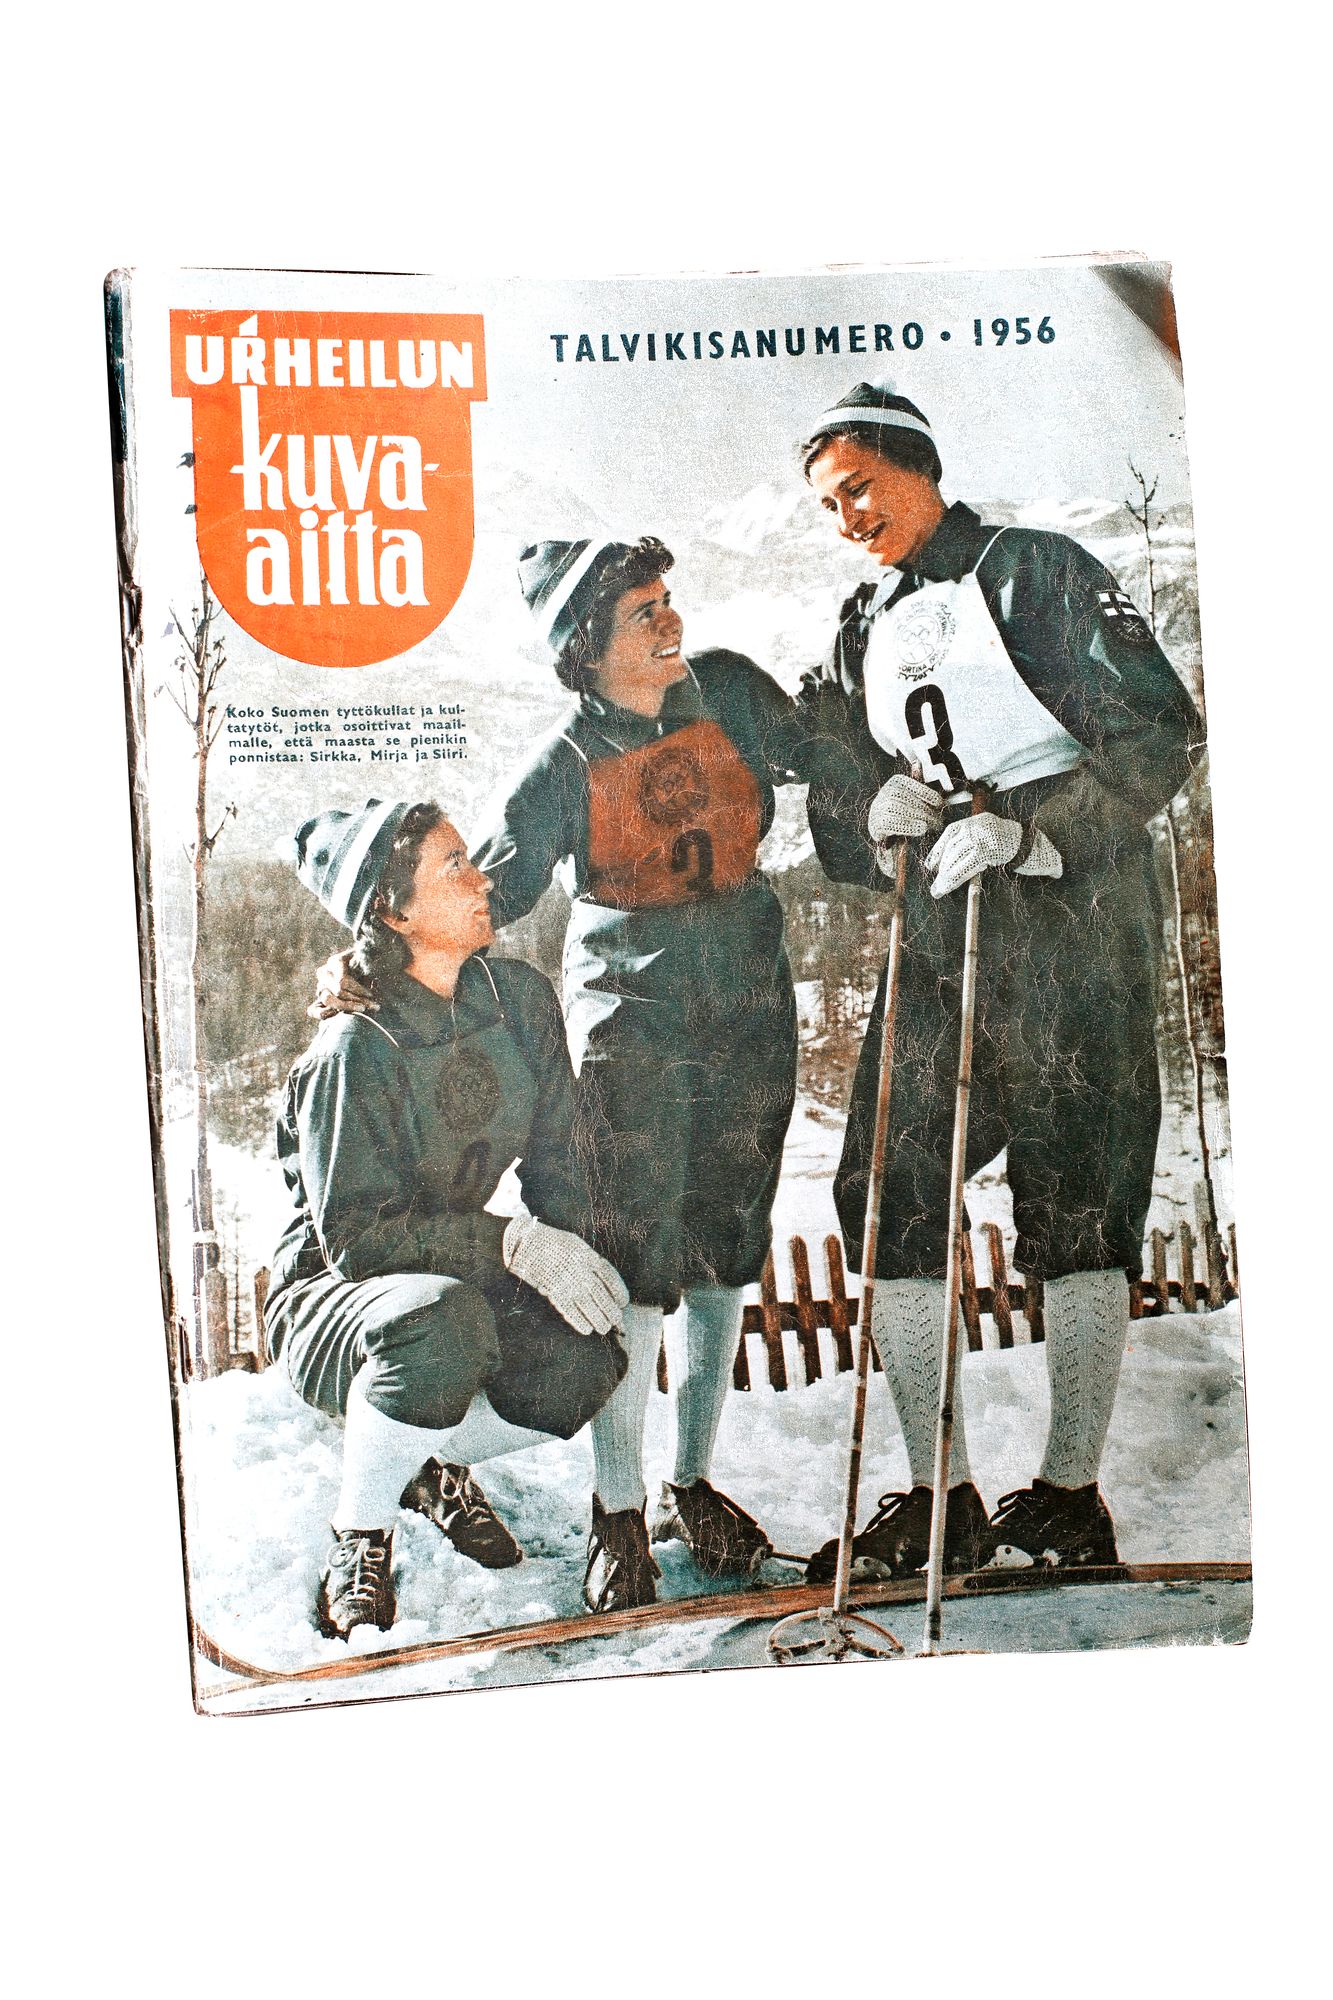 Urheilun kuva-aitta -lehti vuodelta 1956, Siiri Rantanen kuvassa oikealla.